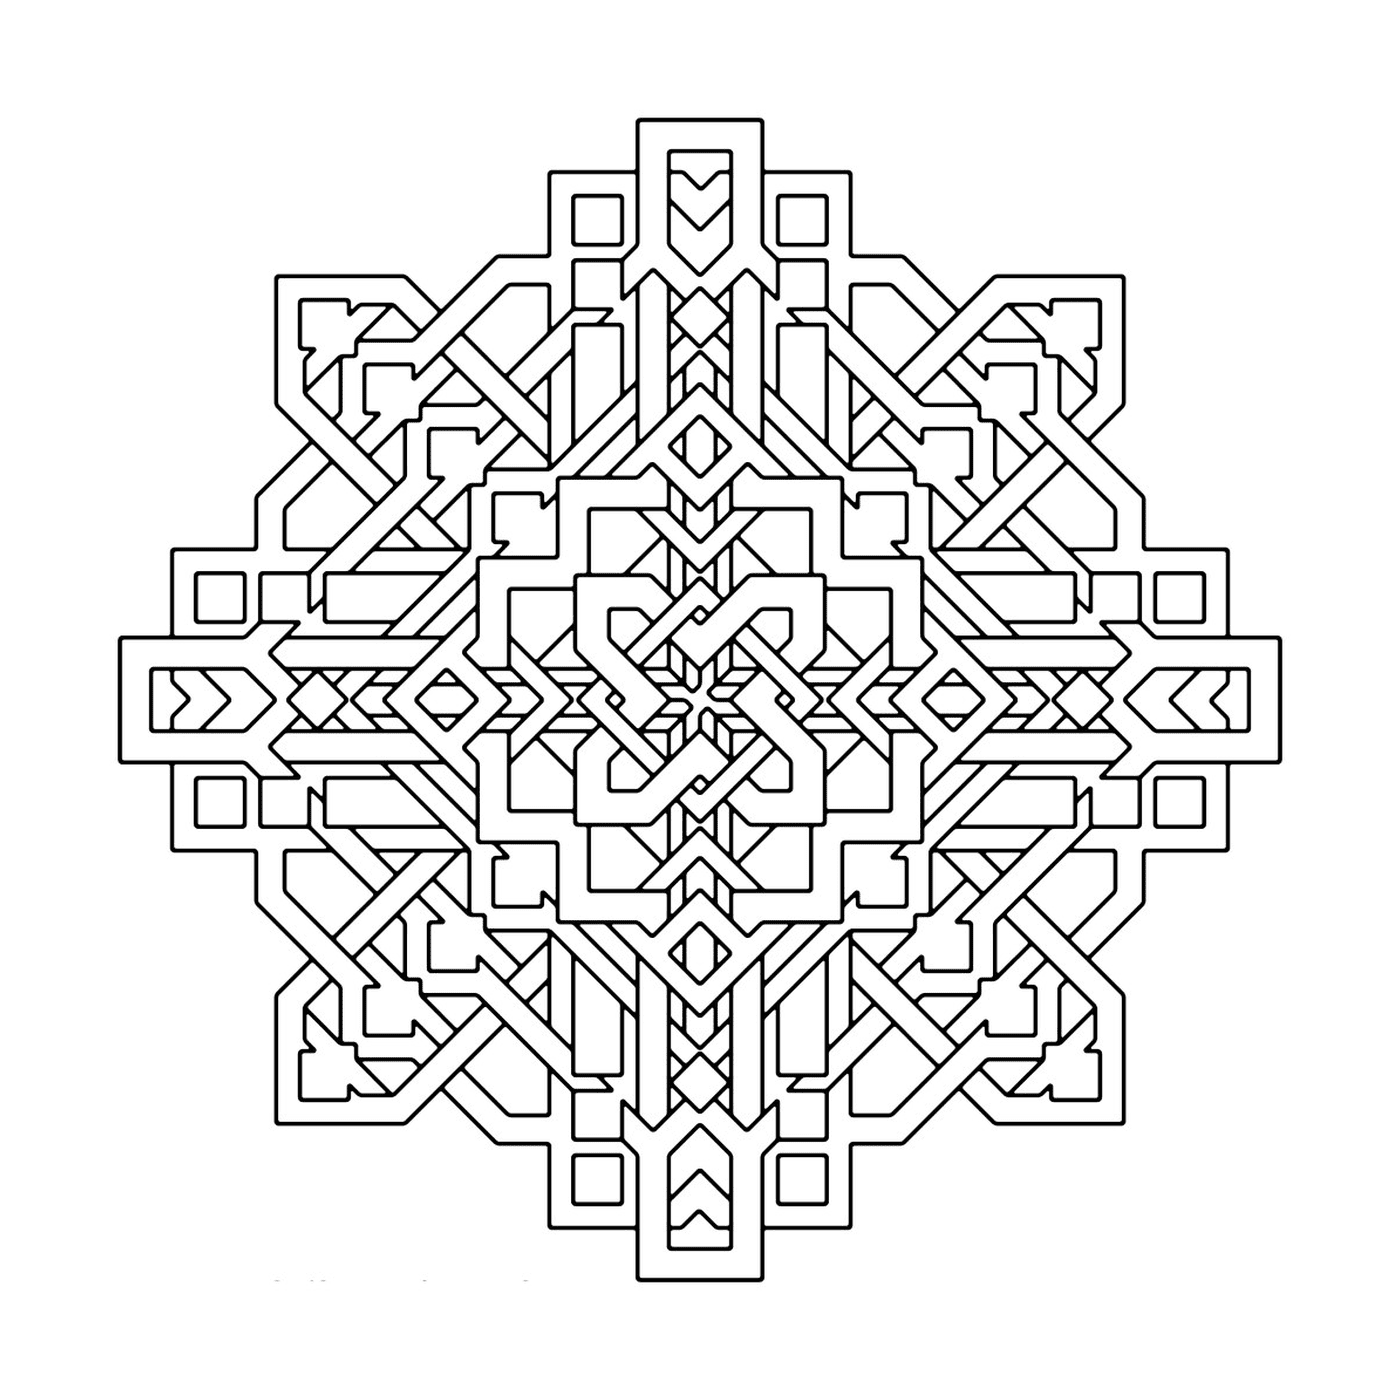  Ein komplexes und detailliertes geometrisches Muster 